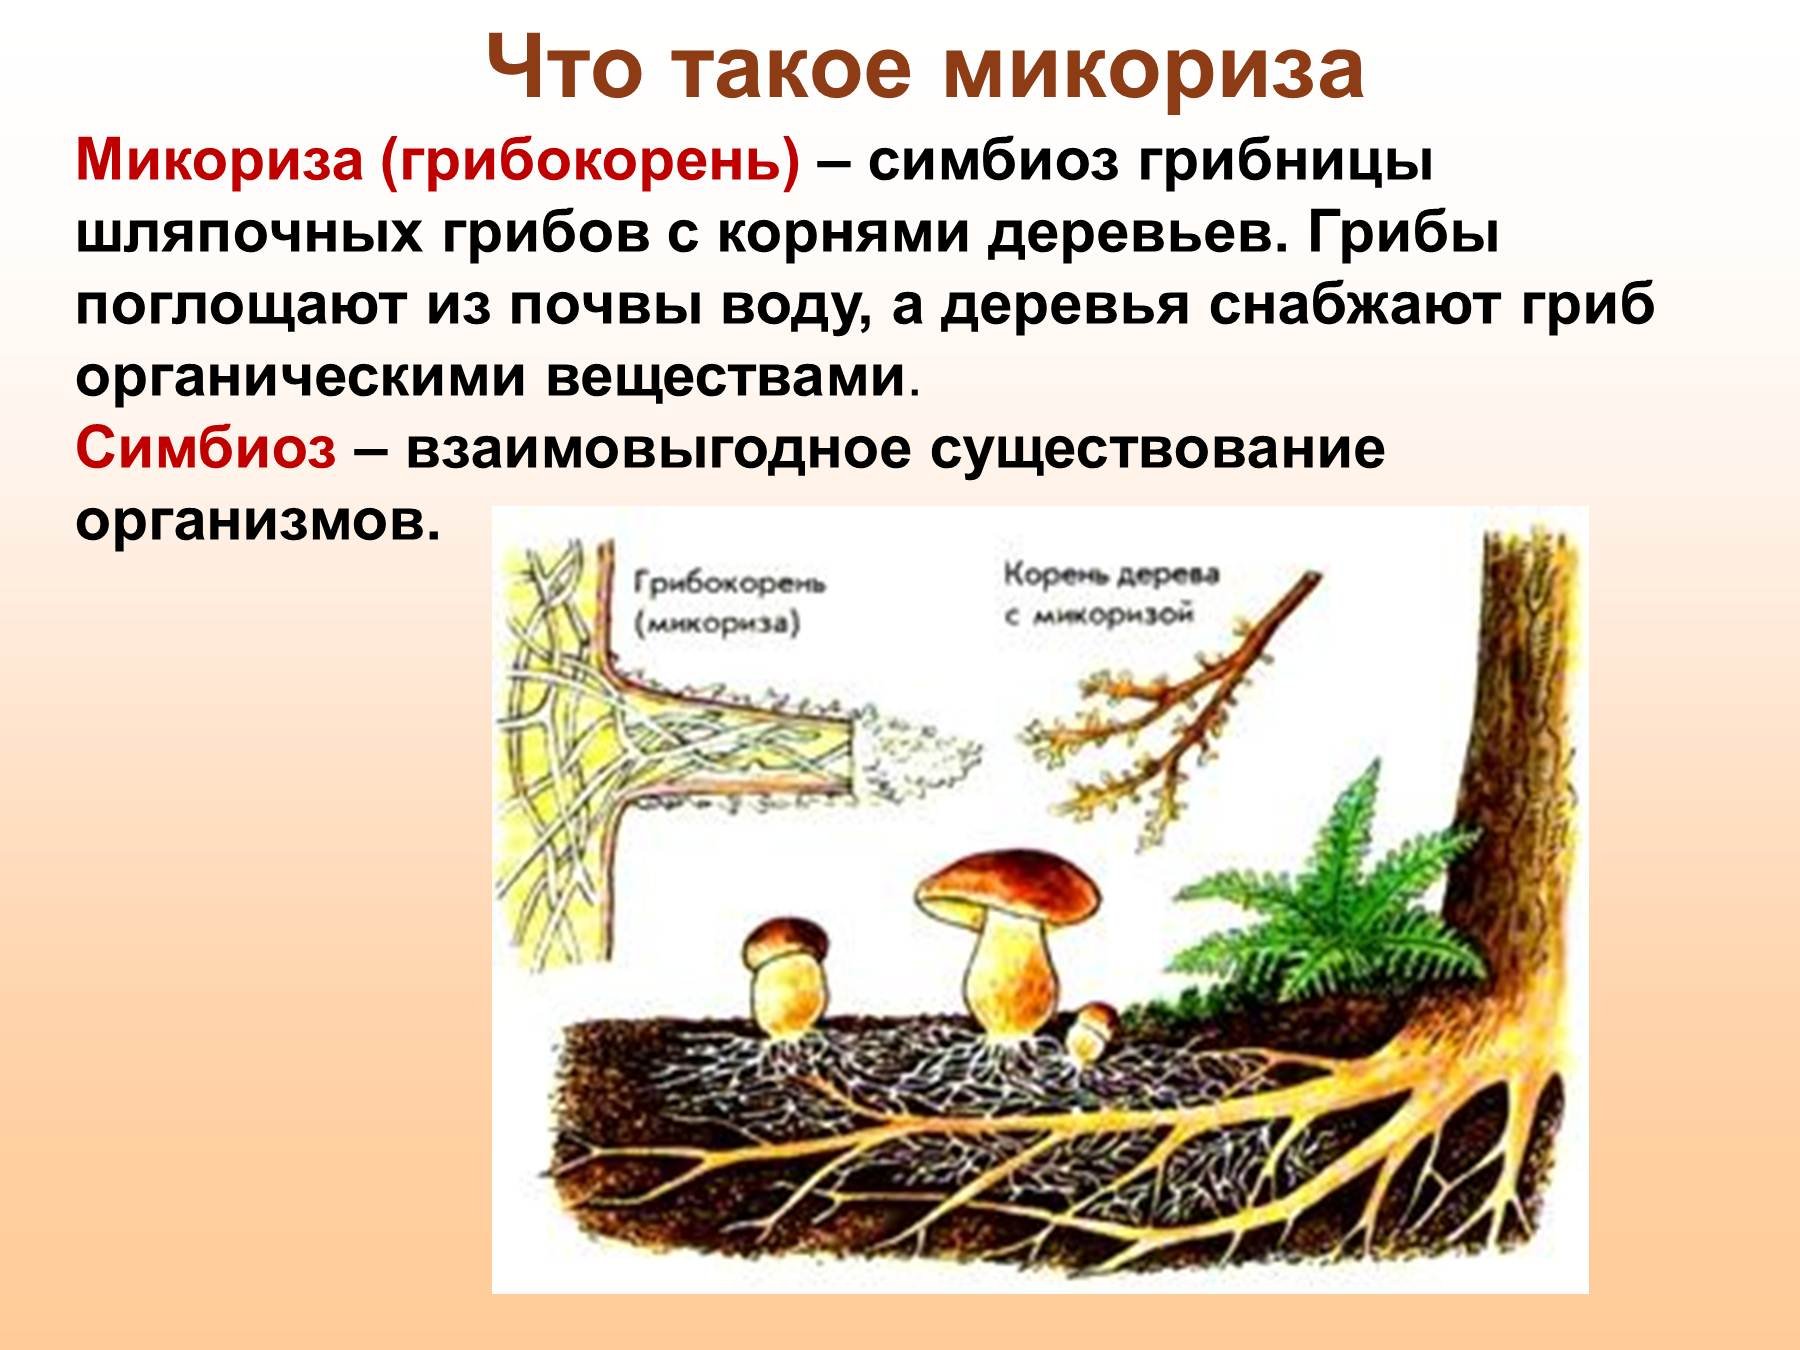 Грибы особая группа симбиотических организмов. Шляпочные грибы микориза. Микориза у шляпочных грибов. Трутовик микориза. Что такое микориза у грибов.